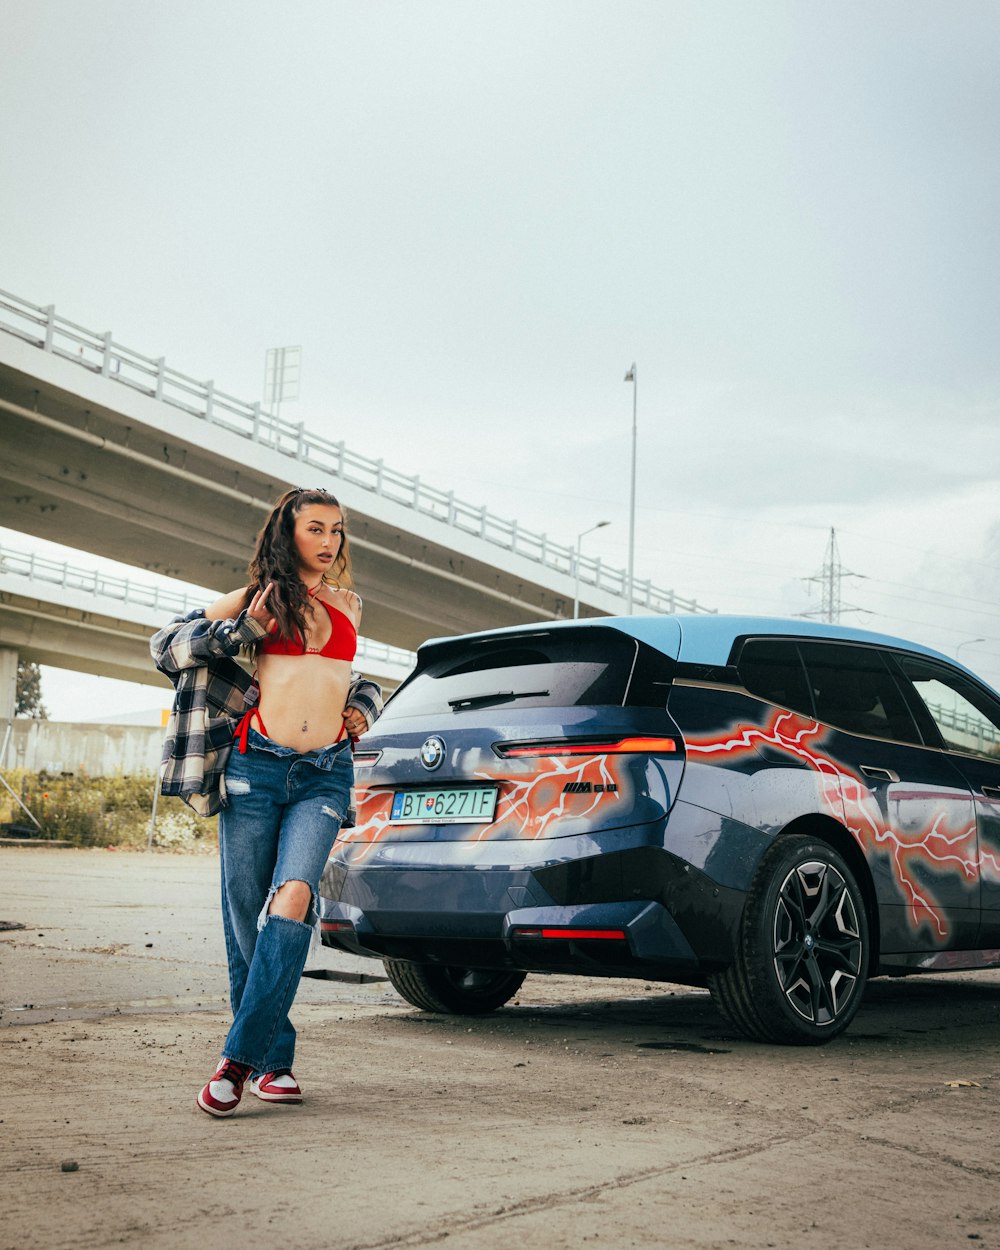 Una mujer parada junto a un coche con graffiti en él